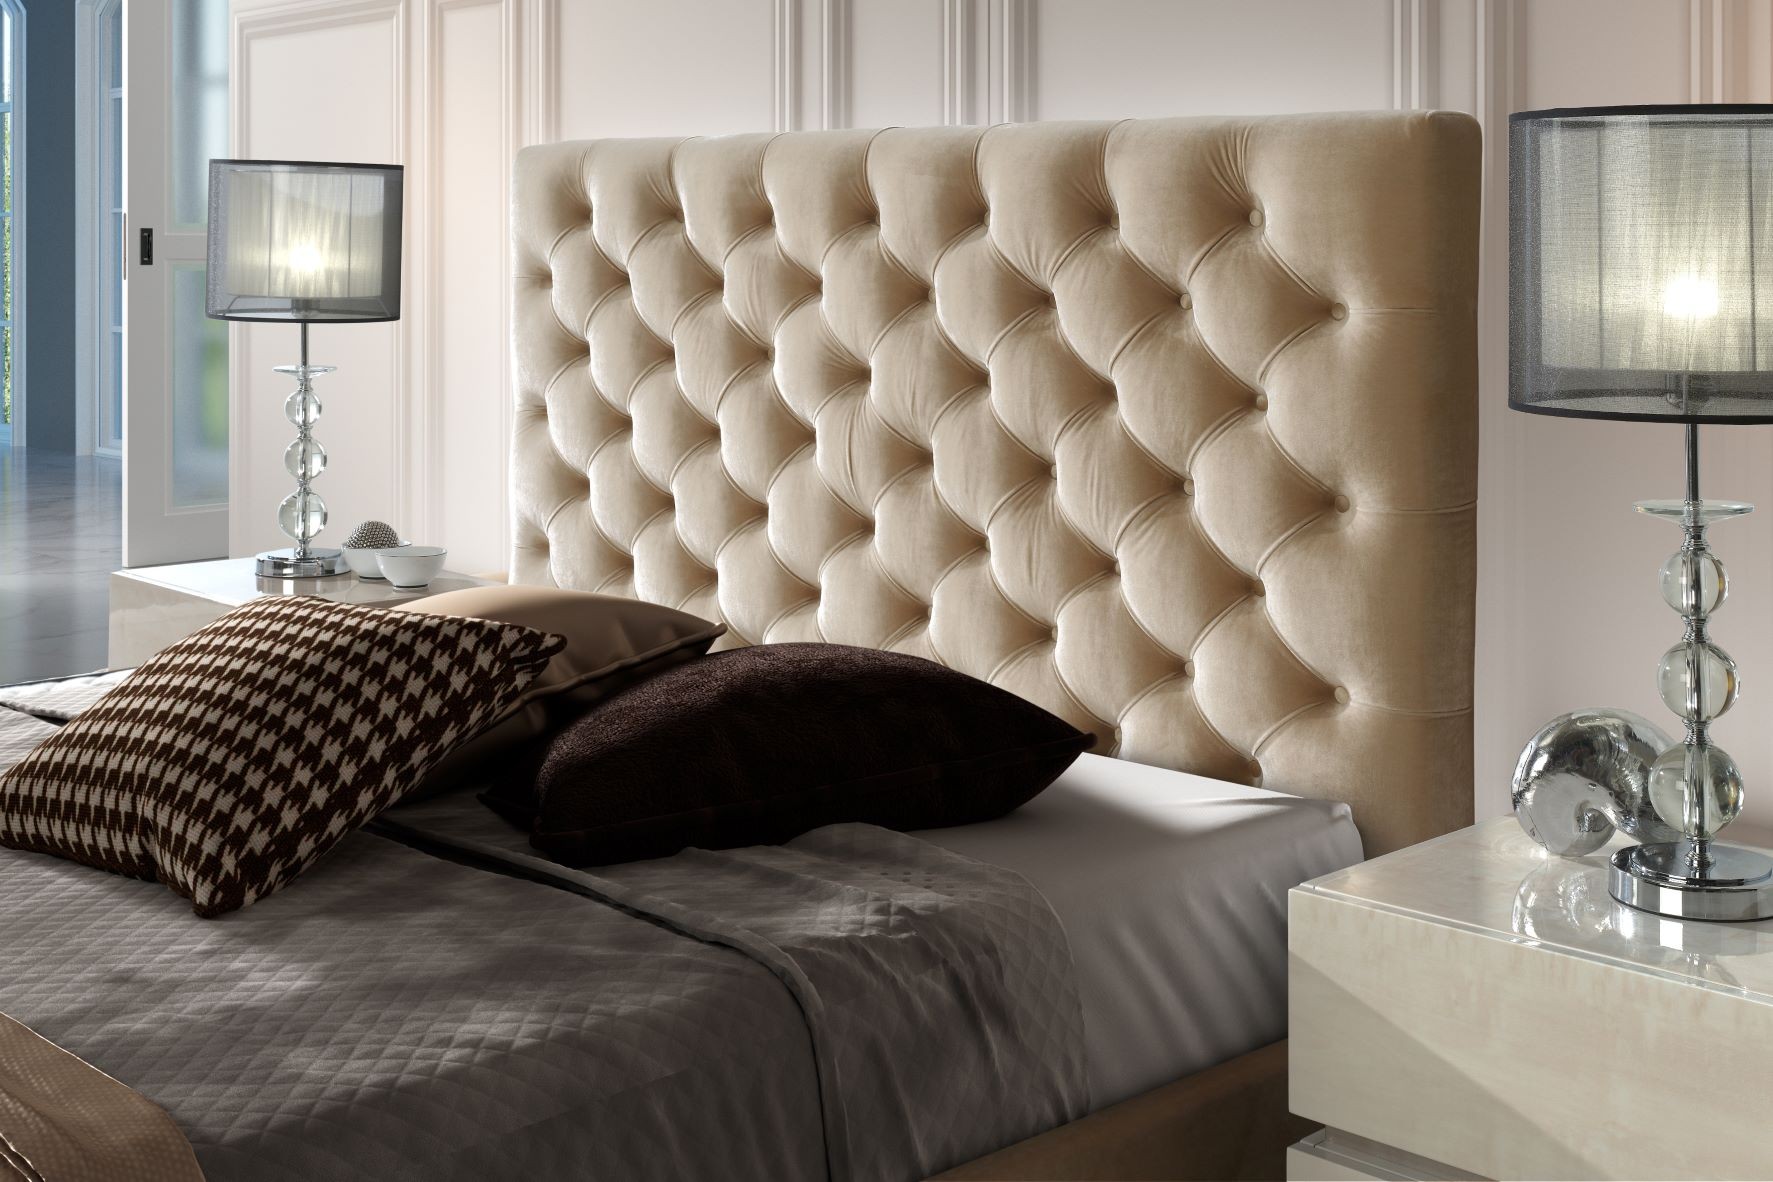 Estila Chesterfield čalouněná postel Gala v moderním stylu s úložným prostorem 140-180cm